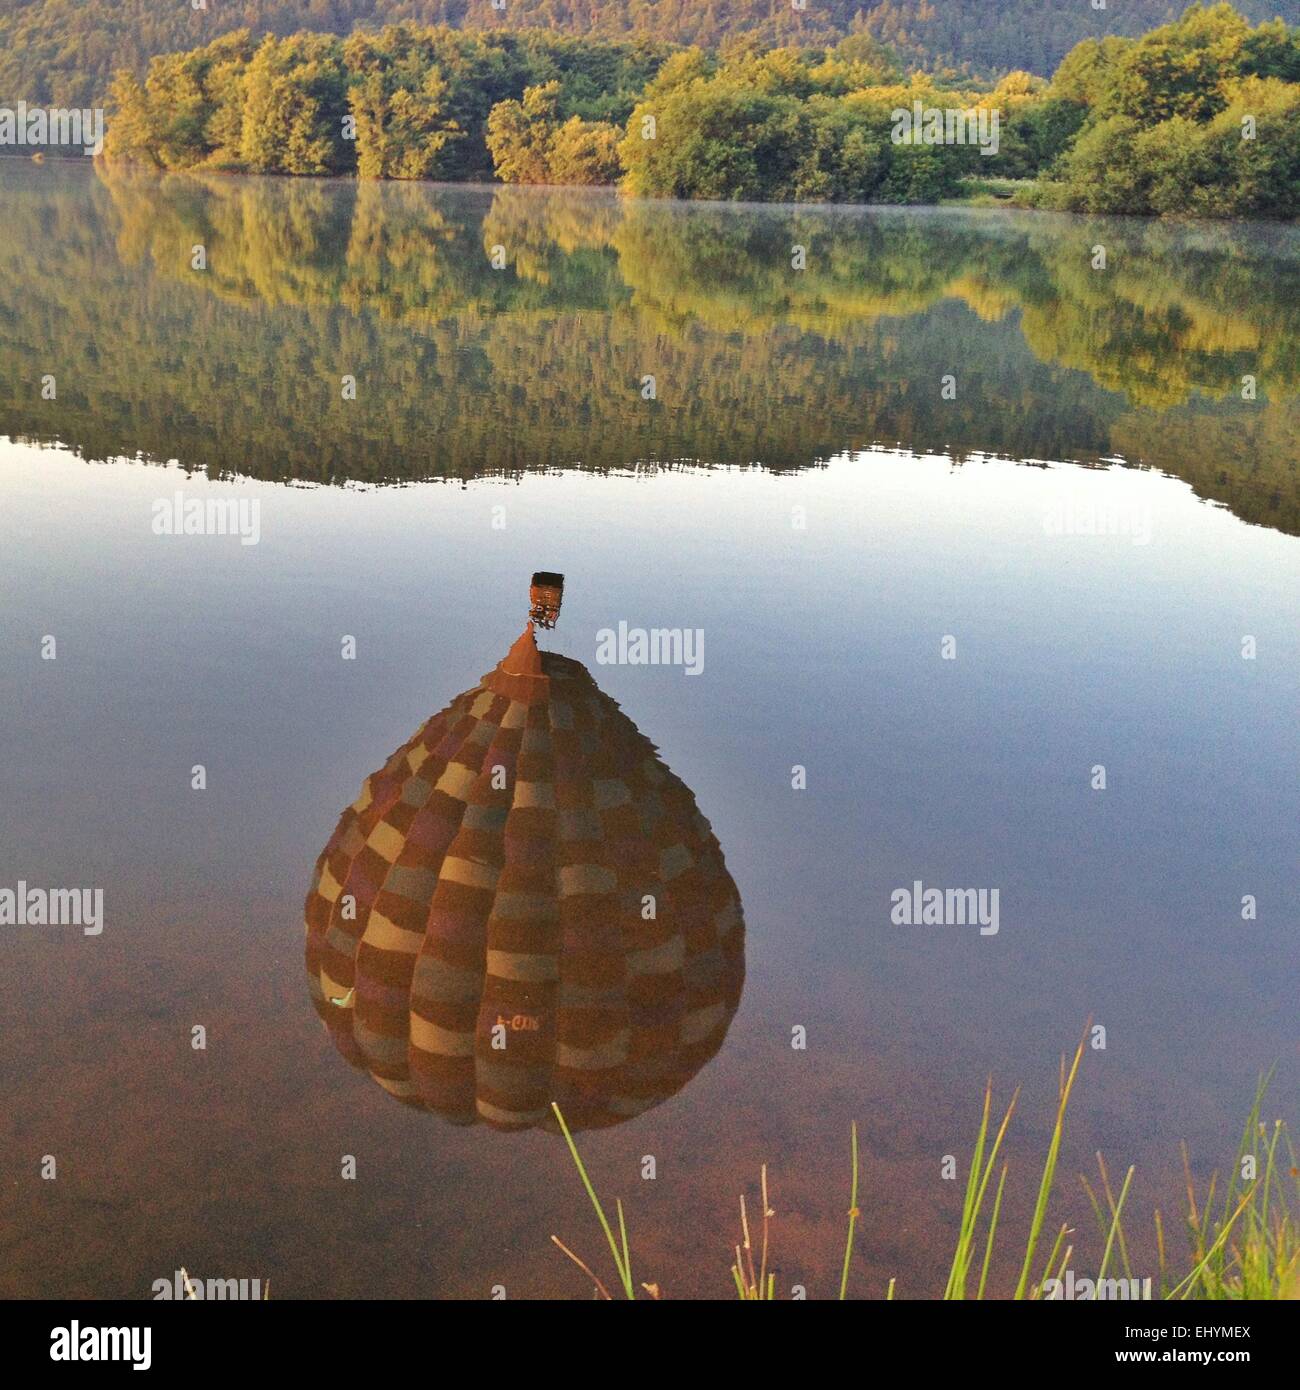 Hot Air Balloon reflet dans un lac, Le Bourget, Auvergne, France Banque D'Images